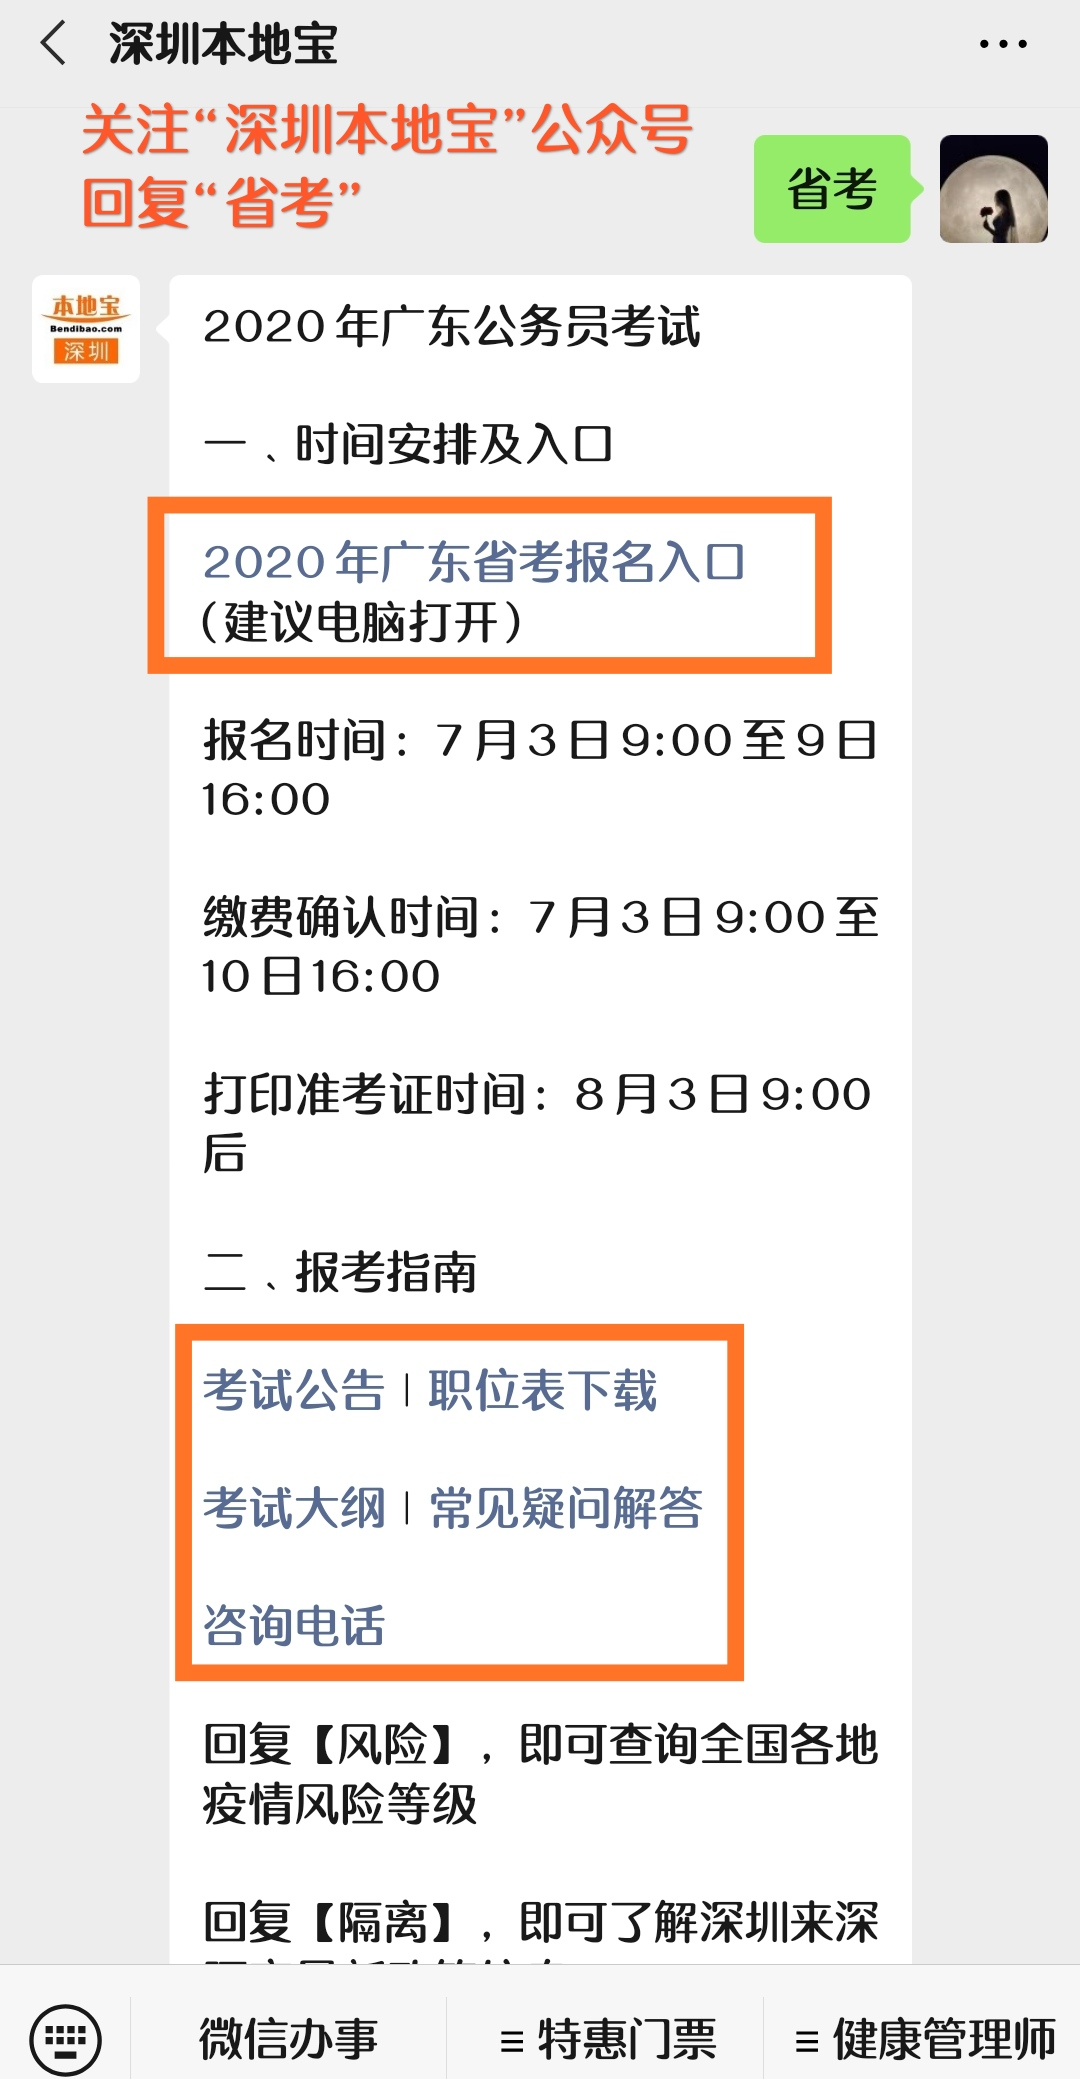 2020年广东省公务员考试职位表下载入口